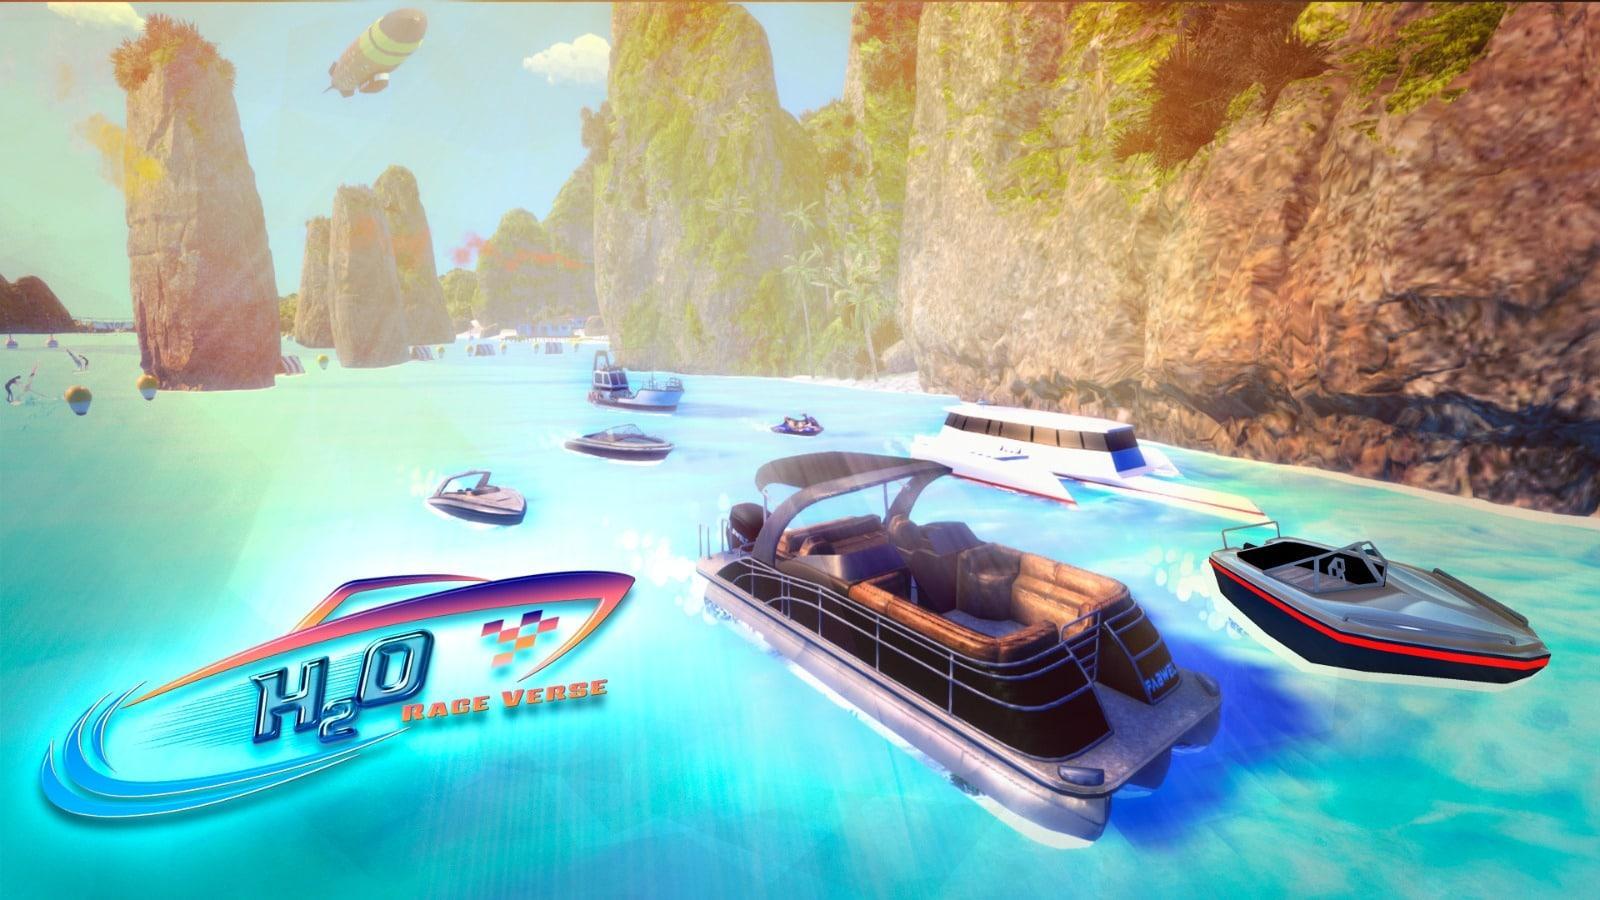 H2O ist ein Genre von Videospielen zum Spielen und Verdienen, bei denen es typischerweise um Rennen mit verschiedenen Arten von Wasserfahrzeugen wie Booten, Jetskis und anderen NFT-Wasserfahrzeugen geht.